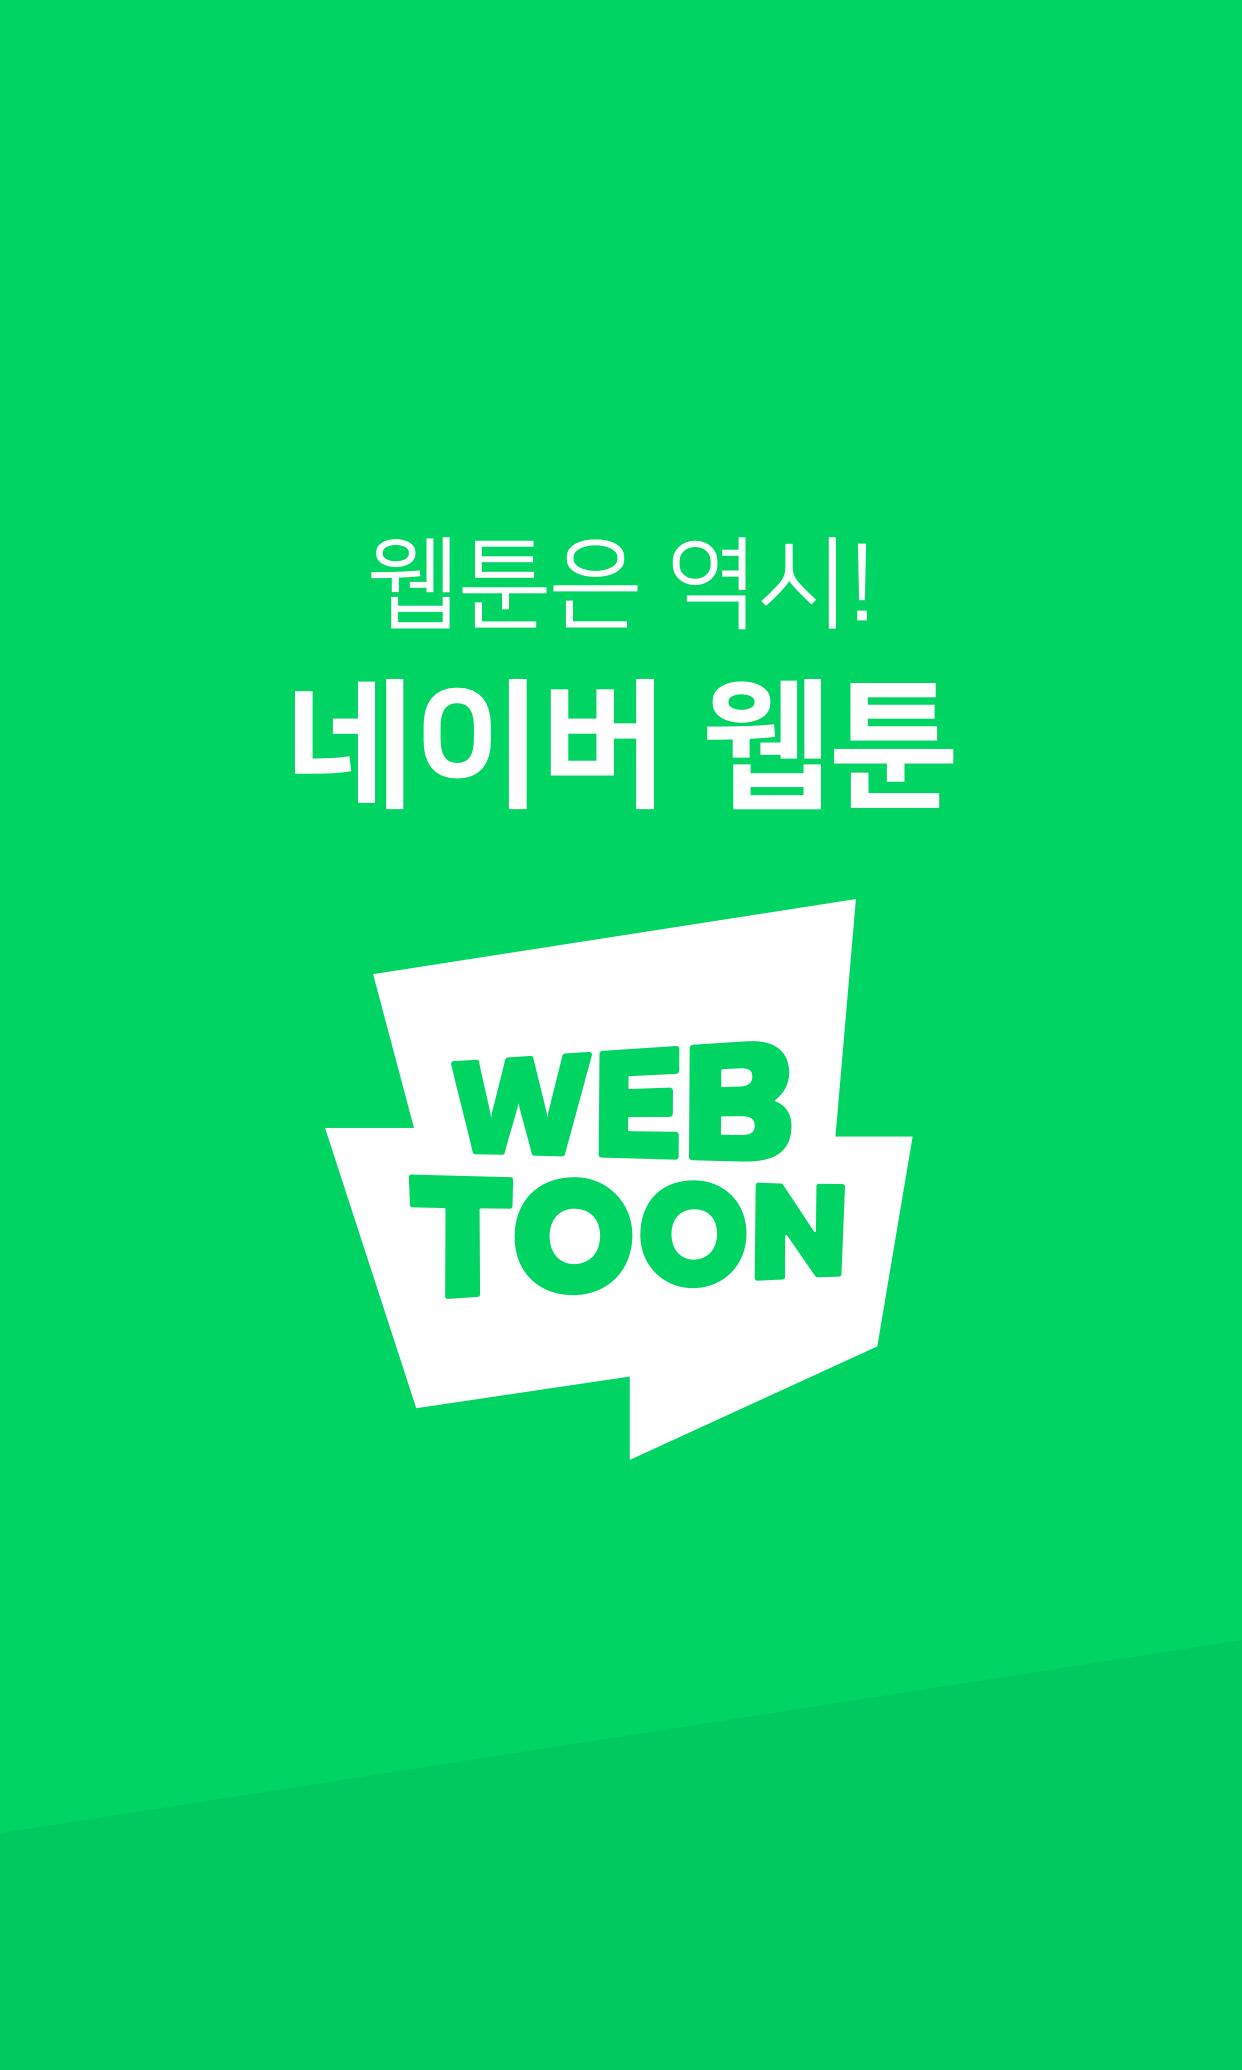 네이버 웹툰 - Naver Webtoon 1.28.0 Screenshot 1